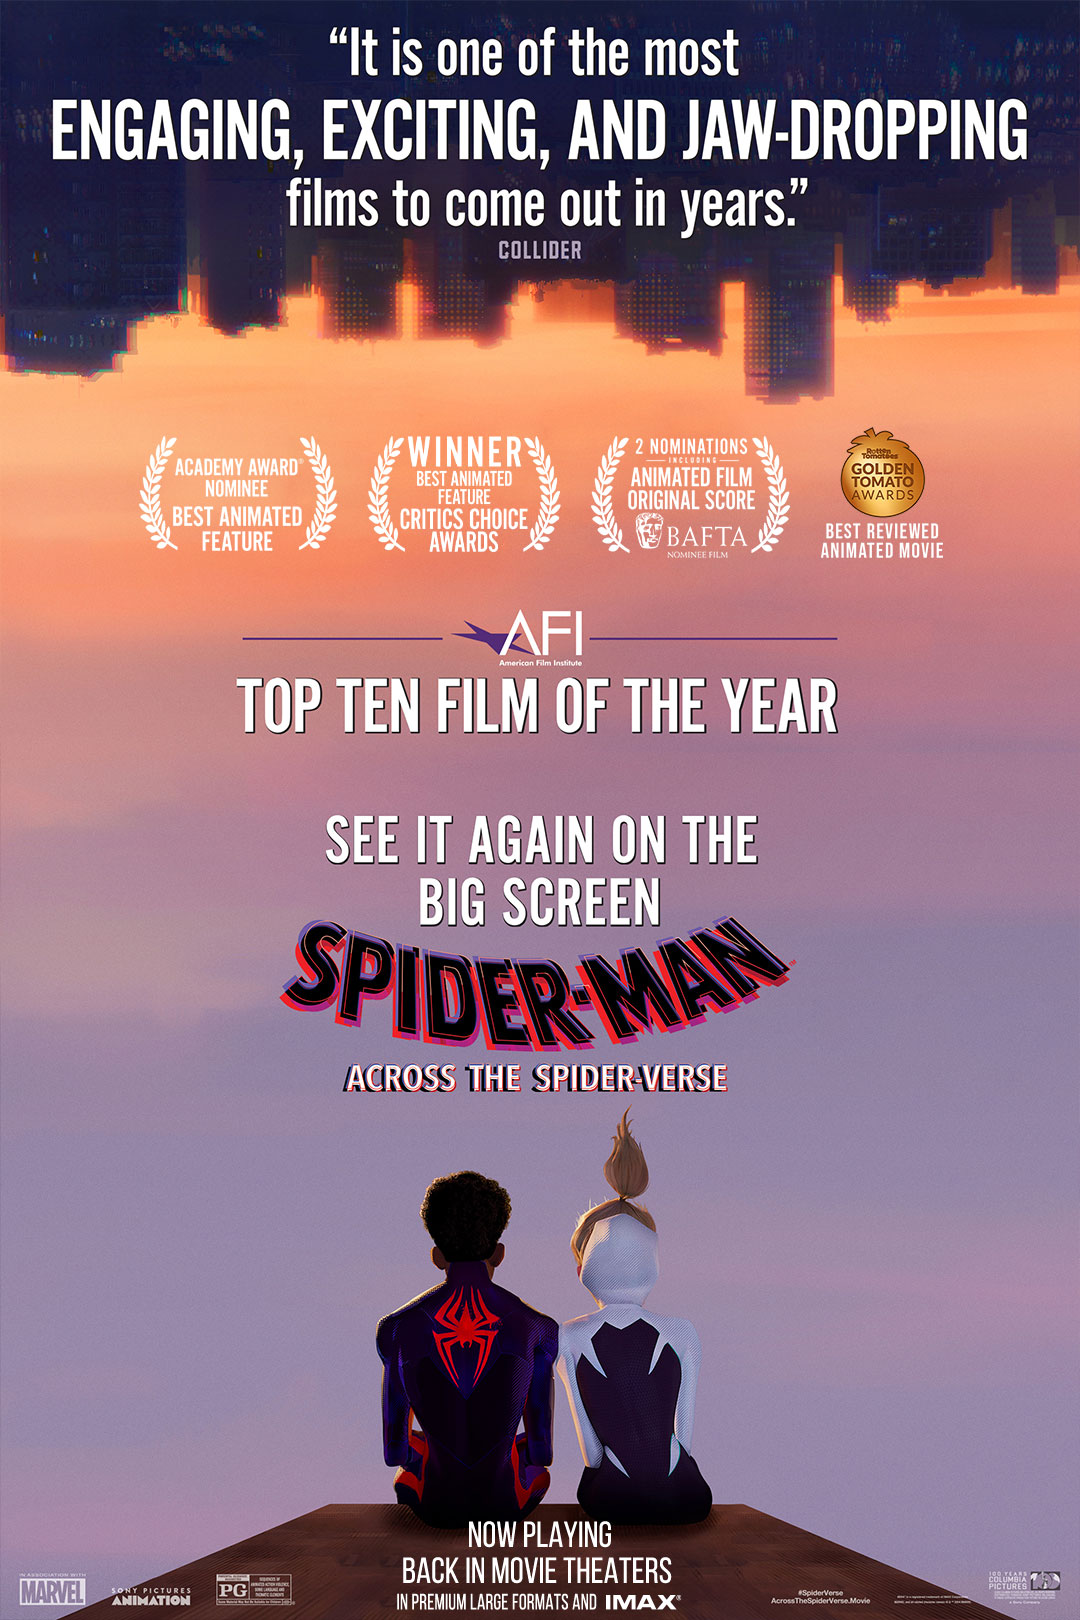 Spider-Man: The Spider Within Spider-Verse Short Film Gets Synopsis